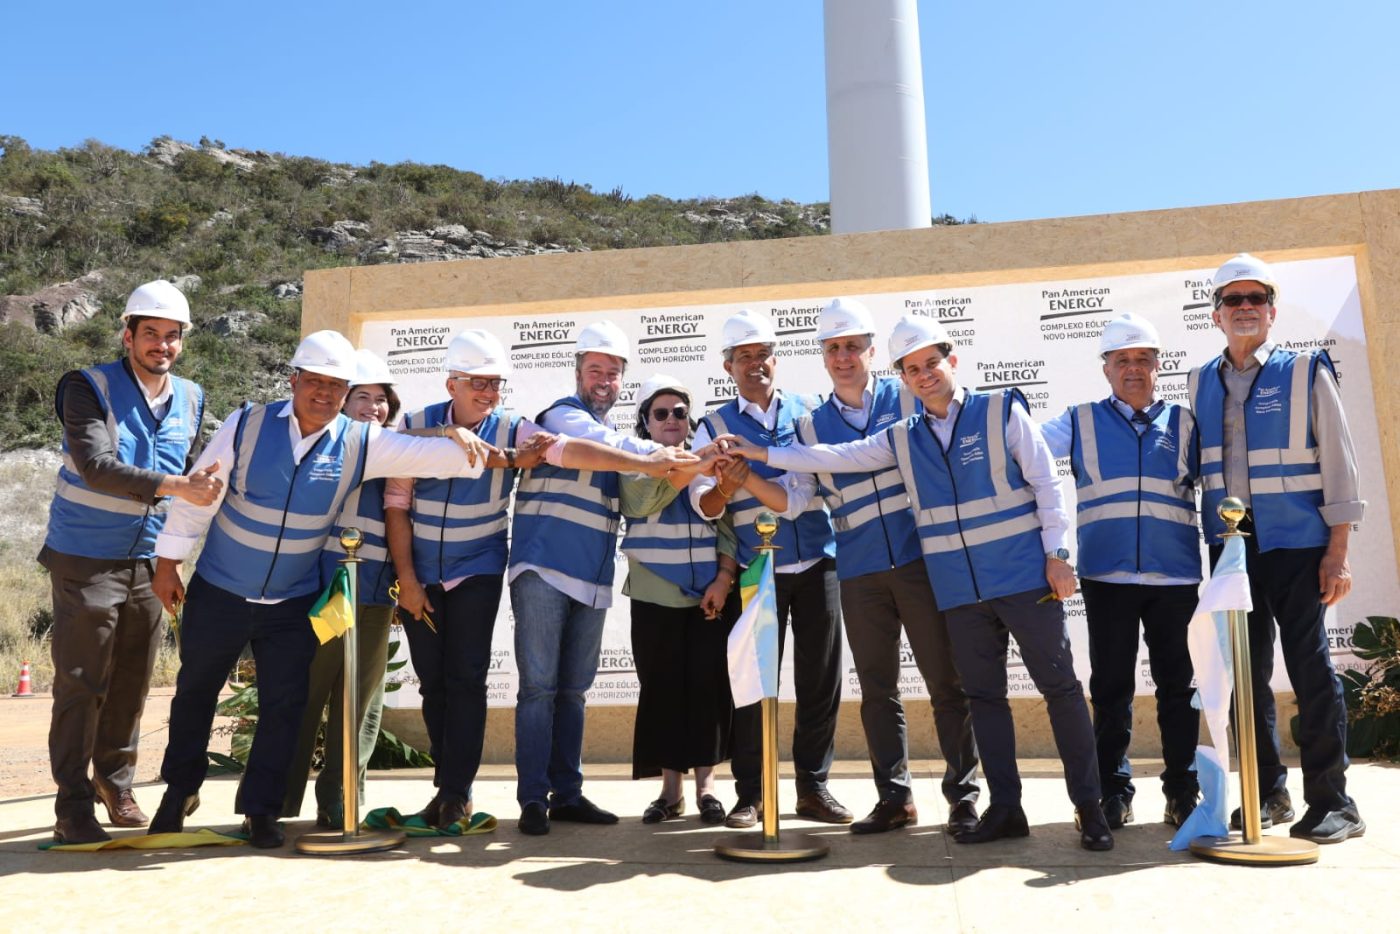 Com investimento de R$ 3 bilhões, complexo eólico com 10 parques é inaugurado na Chapada Diamantina. Veja fotos